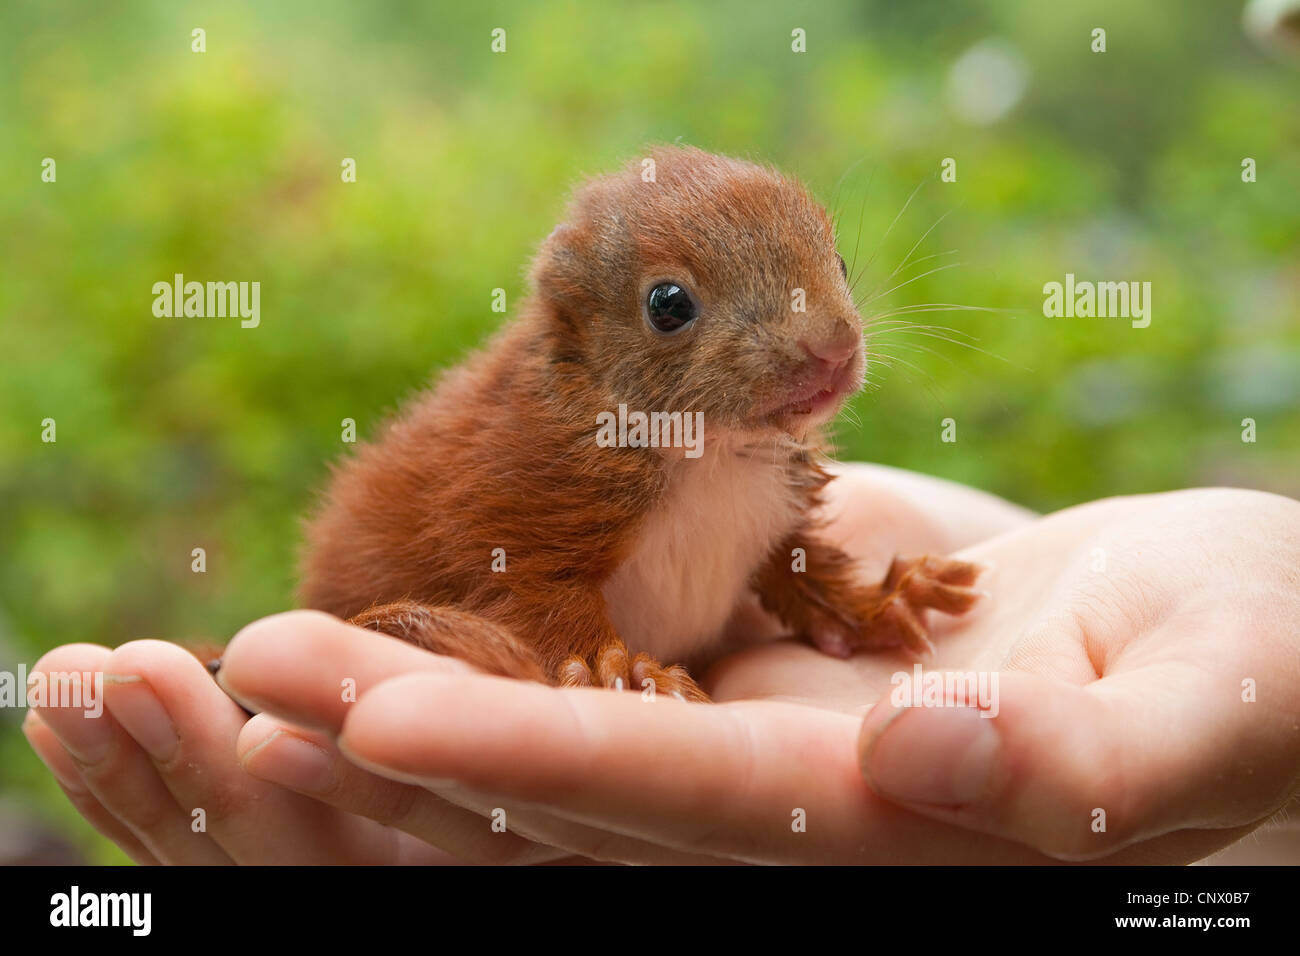 Unione scoiattolo rosso, Eurasian red scoiattolo (Sciurus vulgaris), orfano pup sirring sulle mani, Germania Foto Stock